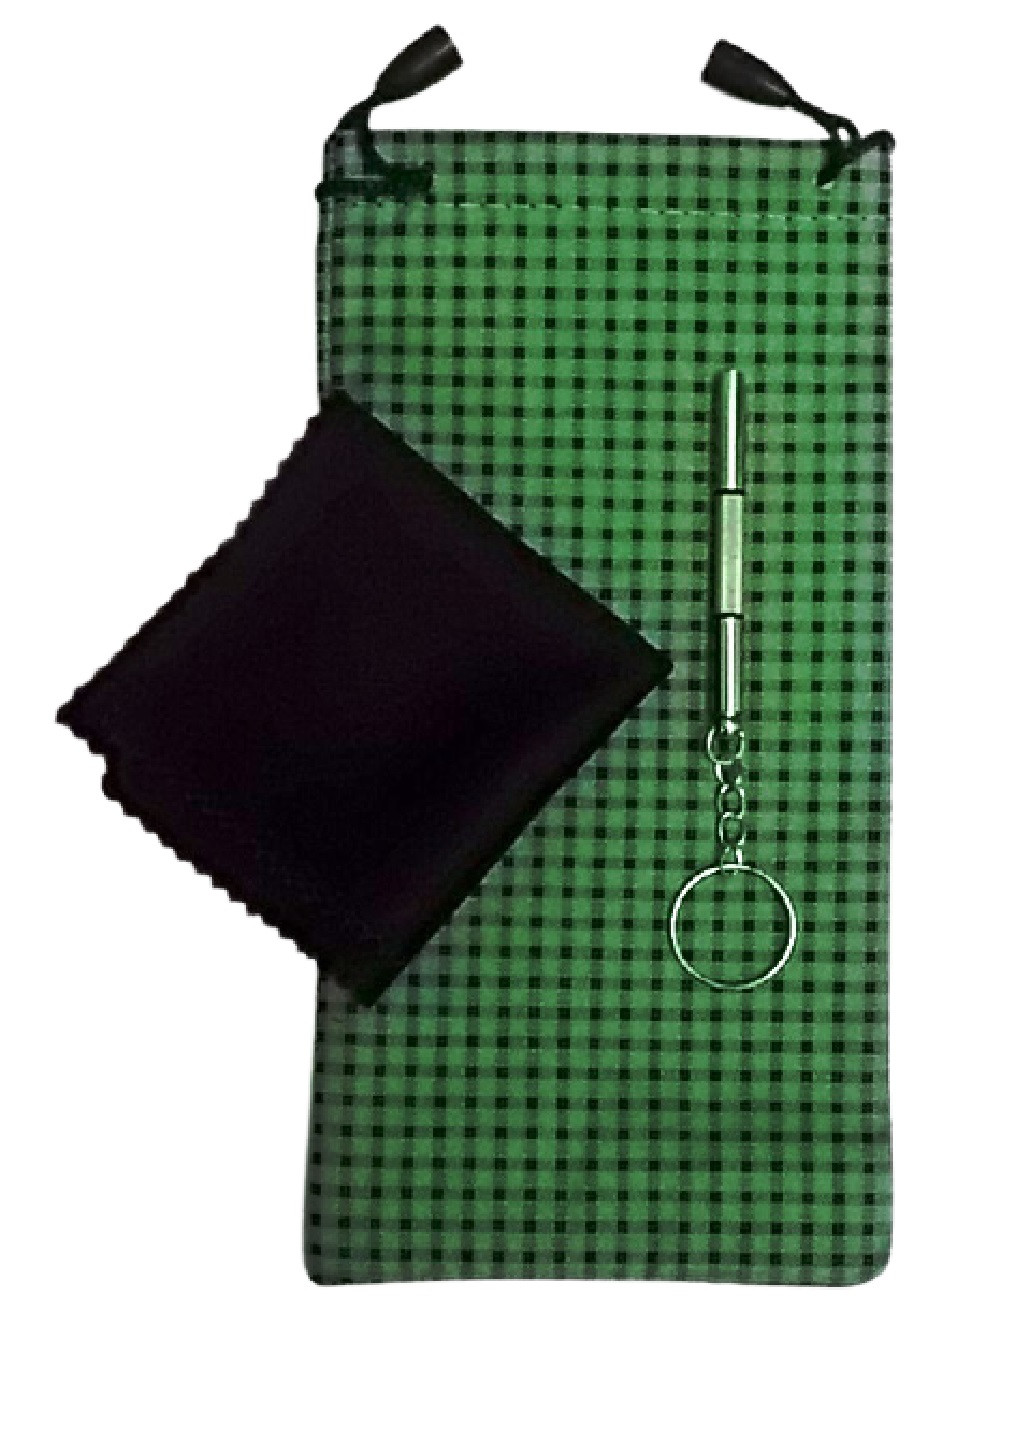 Набор для ухода за очками A&Co. мешочек клетка зелёный текстиль